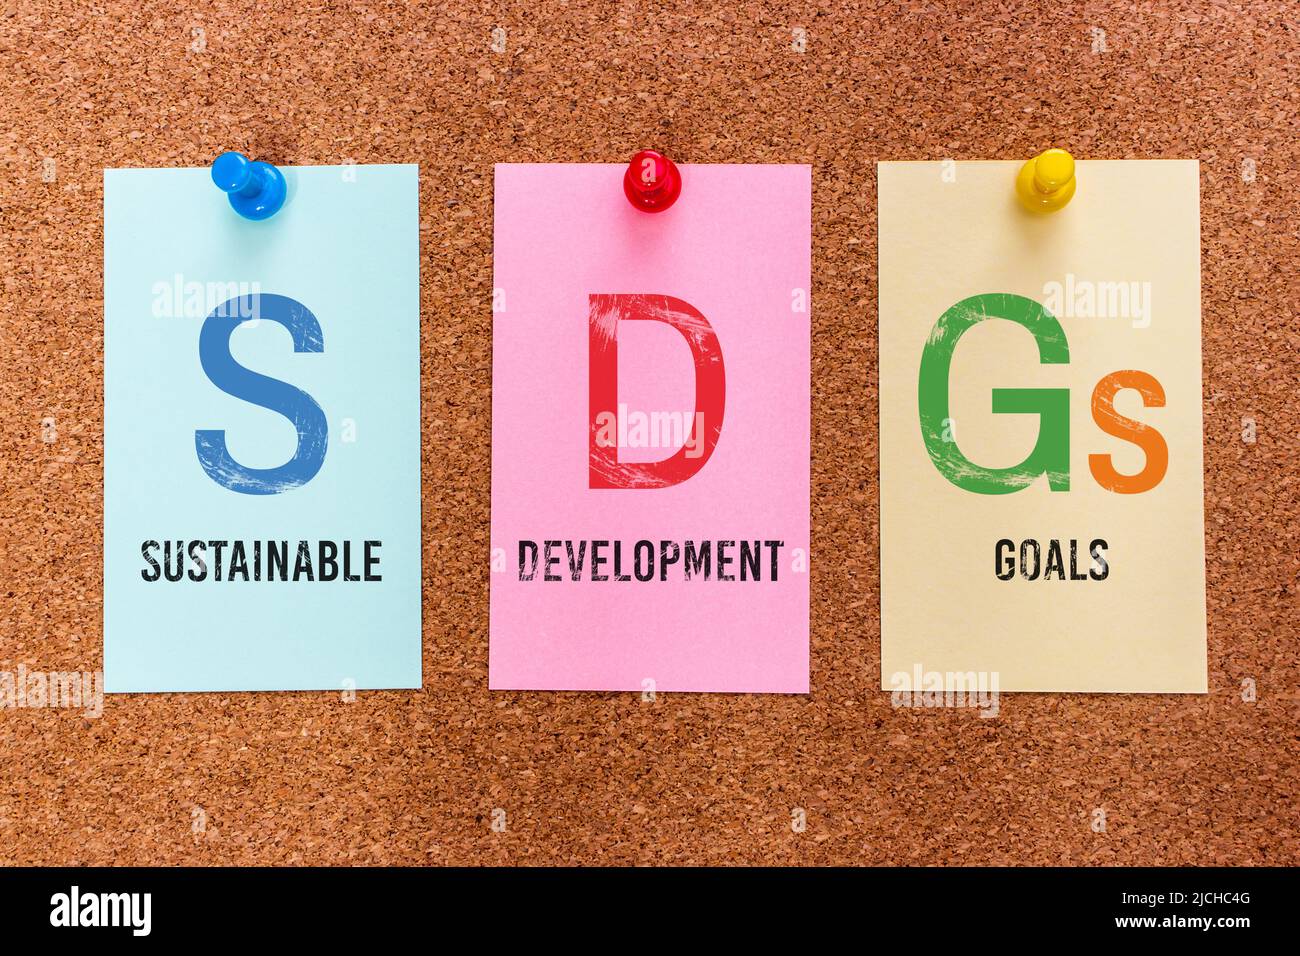 Konzept 3 Buchstaben Schlüsselwort SDGs (Sustainable Development Goals), auf bunten Aufklebern auf einem Korkbrett angebracht. Stockfoto